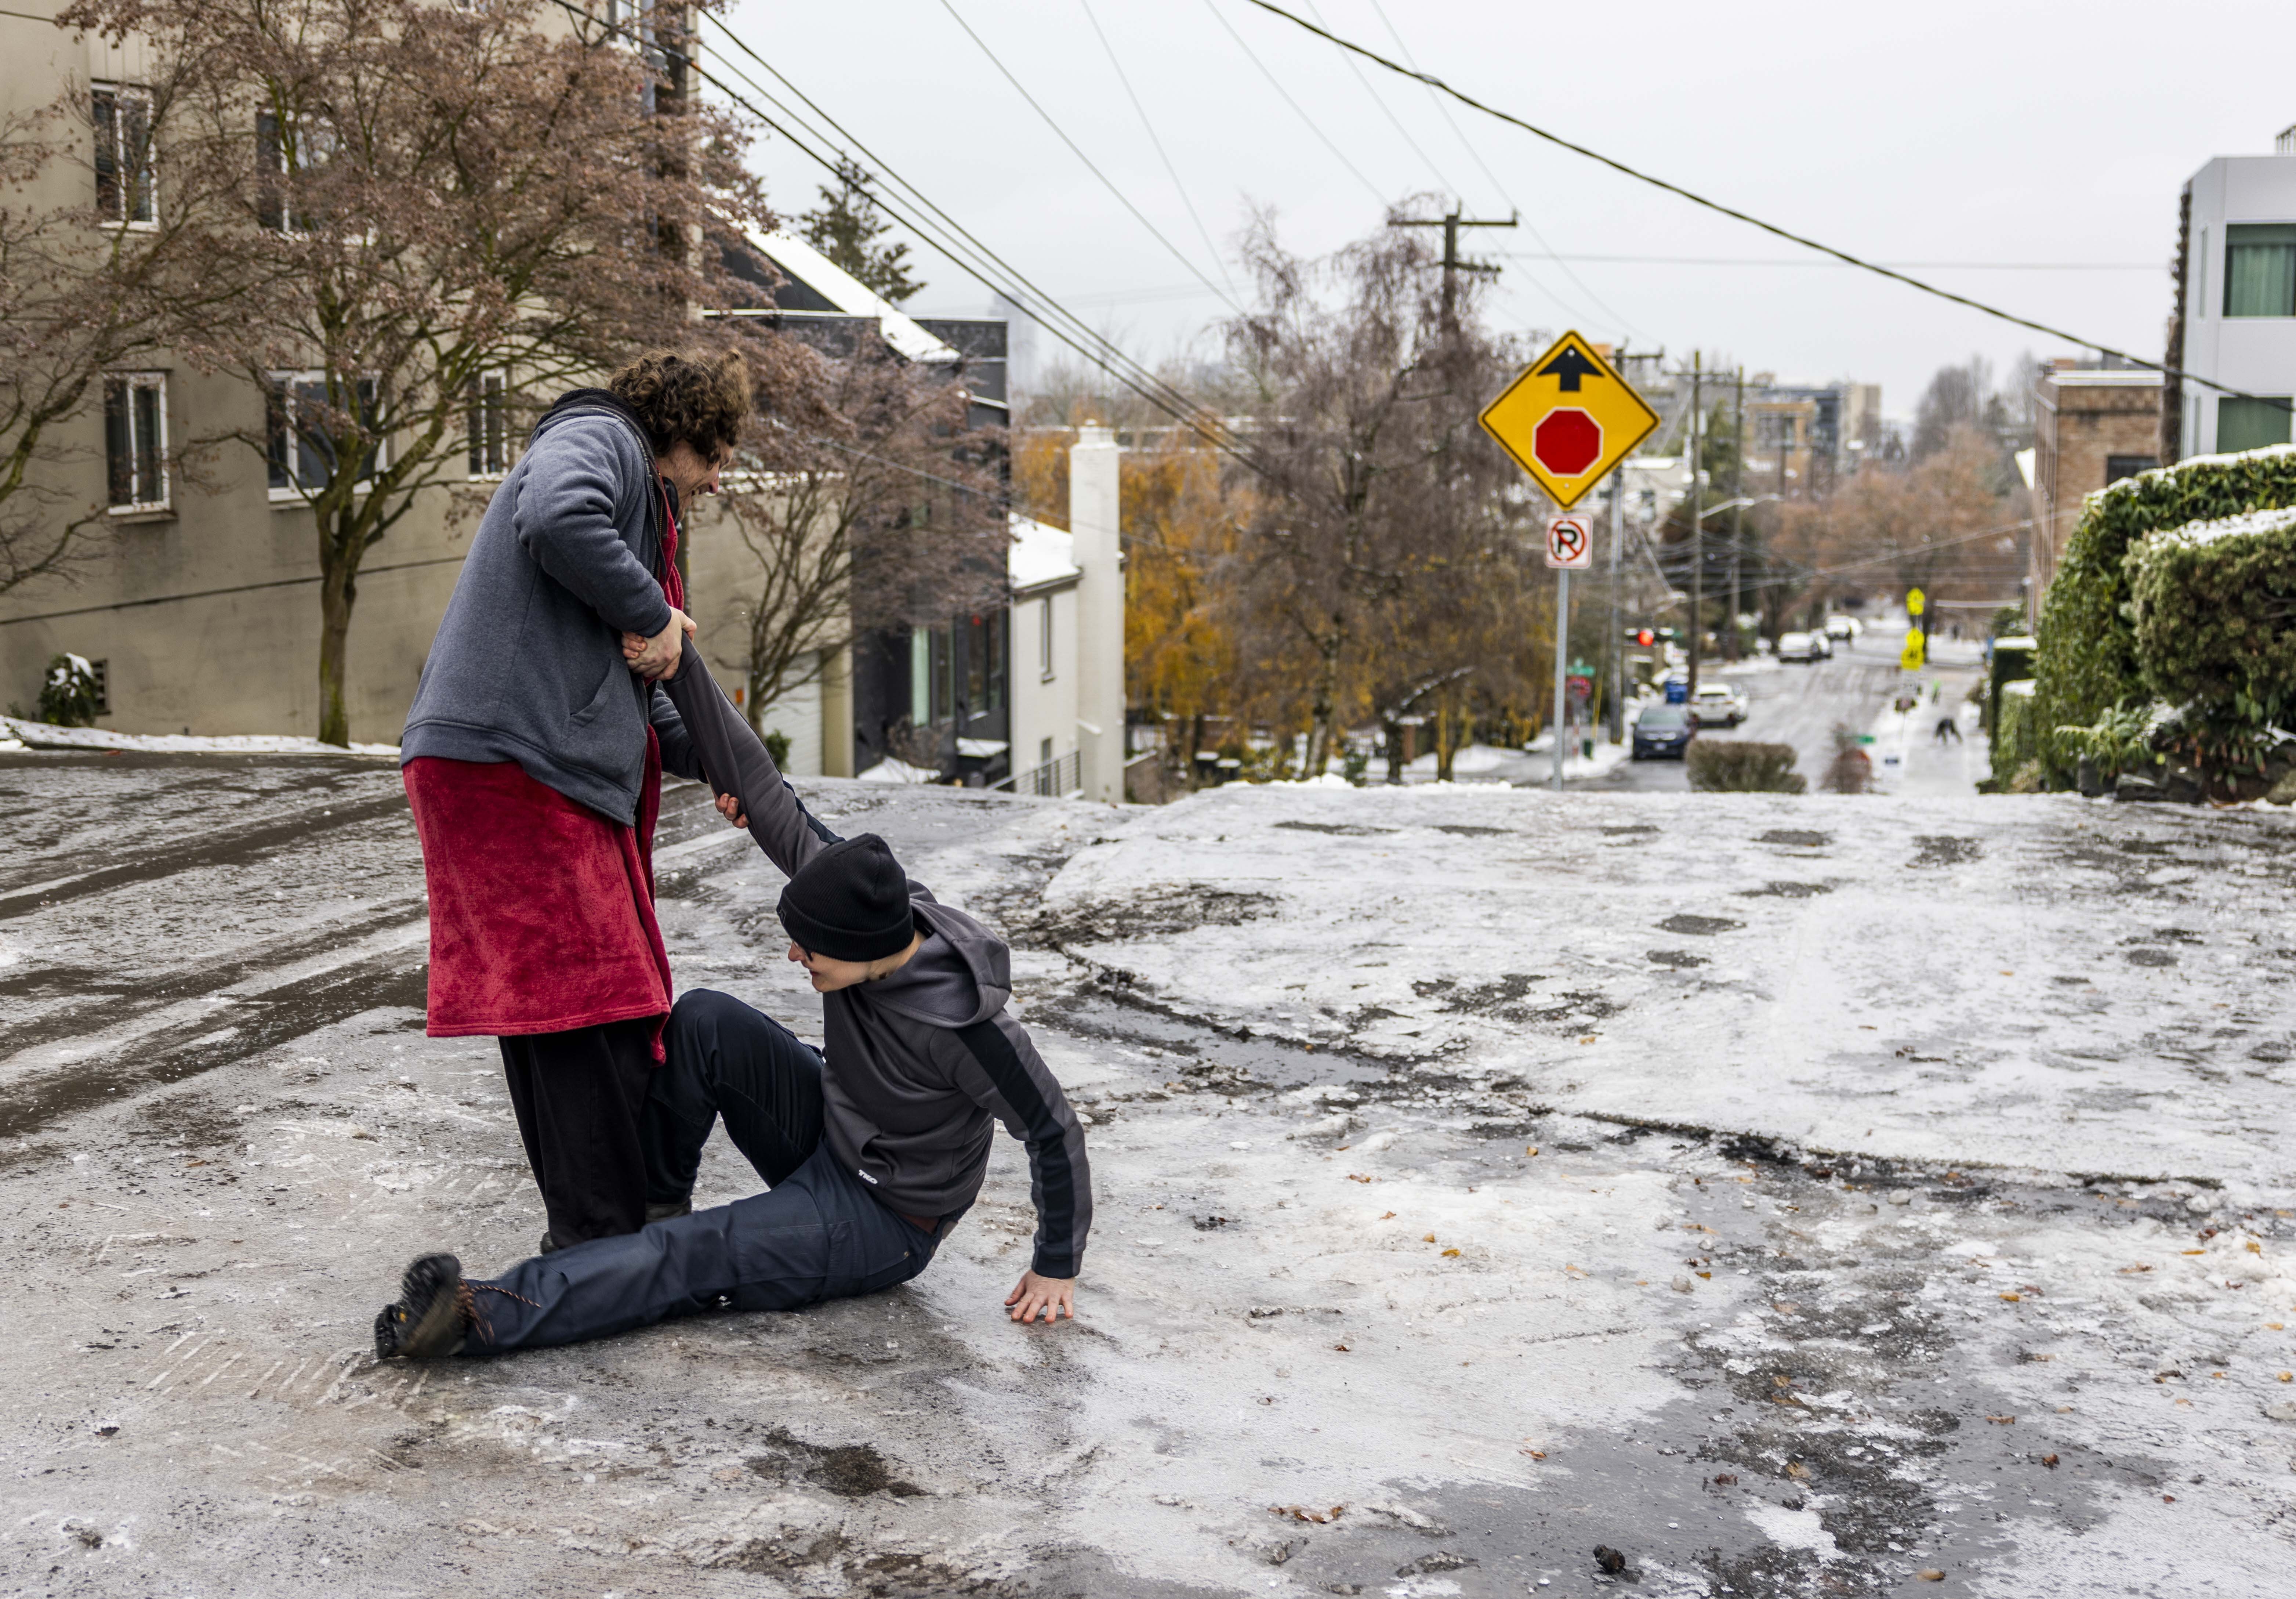 Garrett Fuller, a la izquierda, ayuda a su amigo Robin Jacobs a levantarse después de resbalar al suelo helado en Capitol Hill, el viernes en Seattle. 